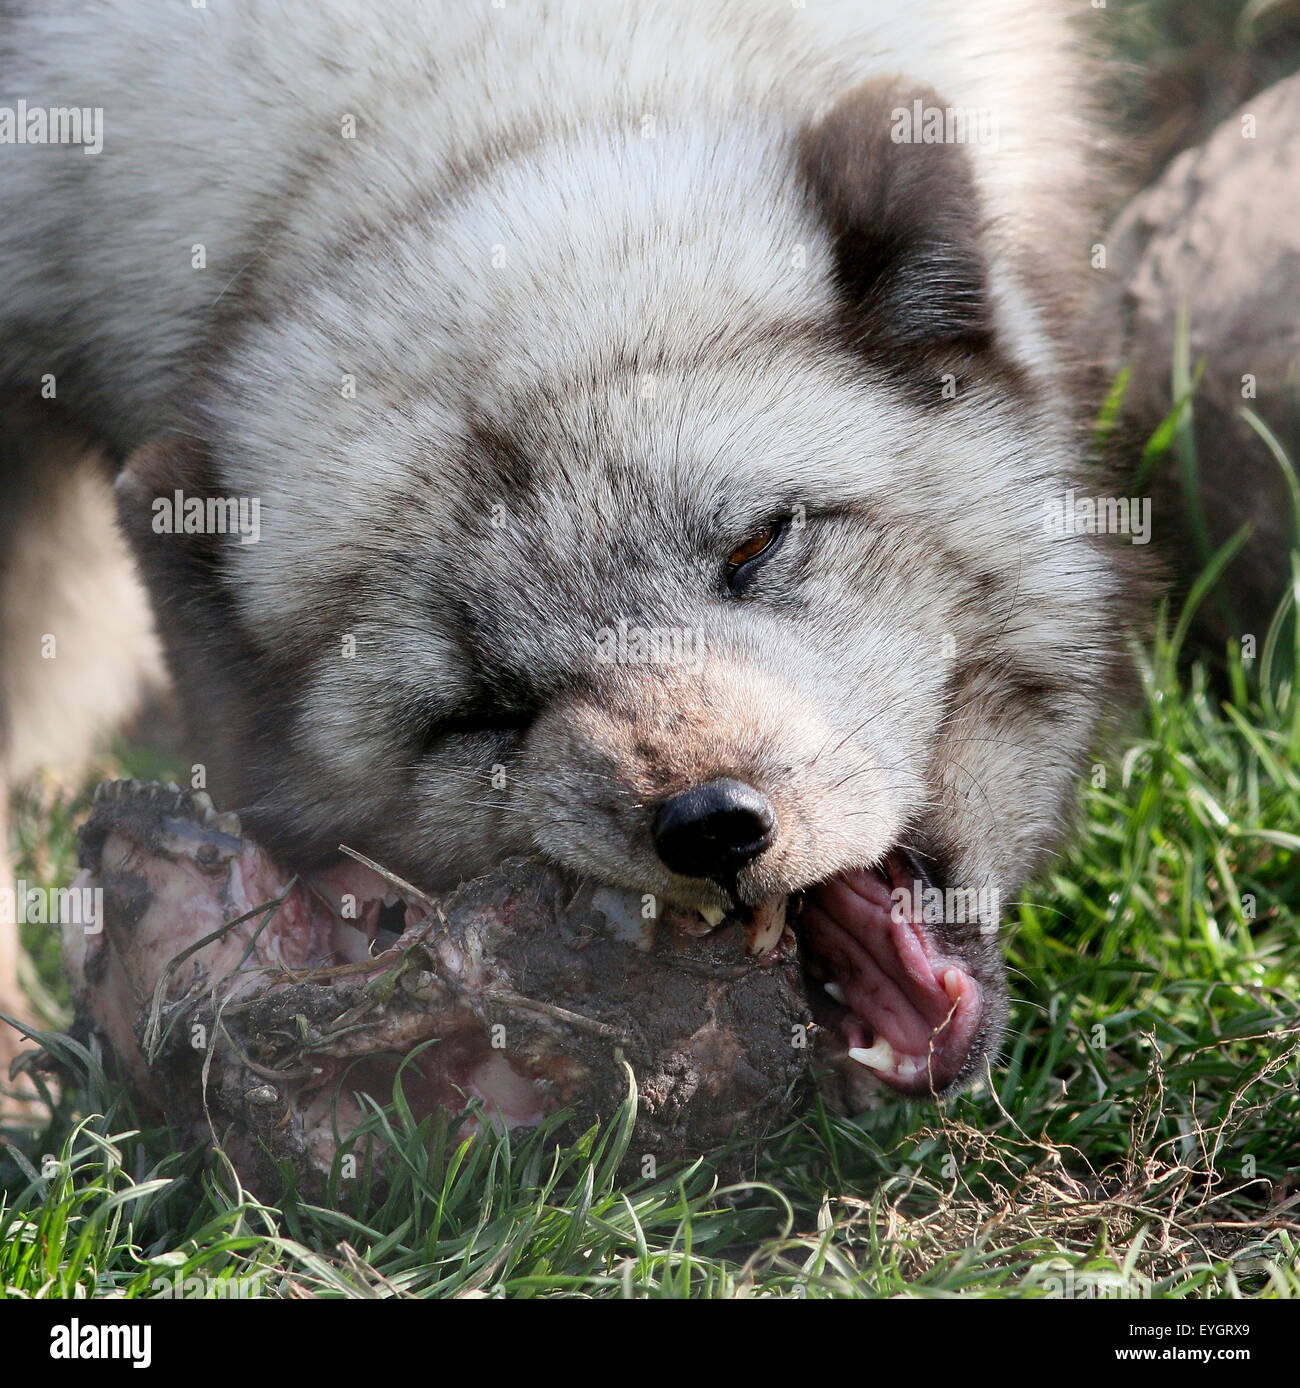 Closeup of the head of an Arctic Fox or Polar Fox (Vulpes lagopus) feeding on a carcass Stock Photo